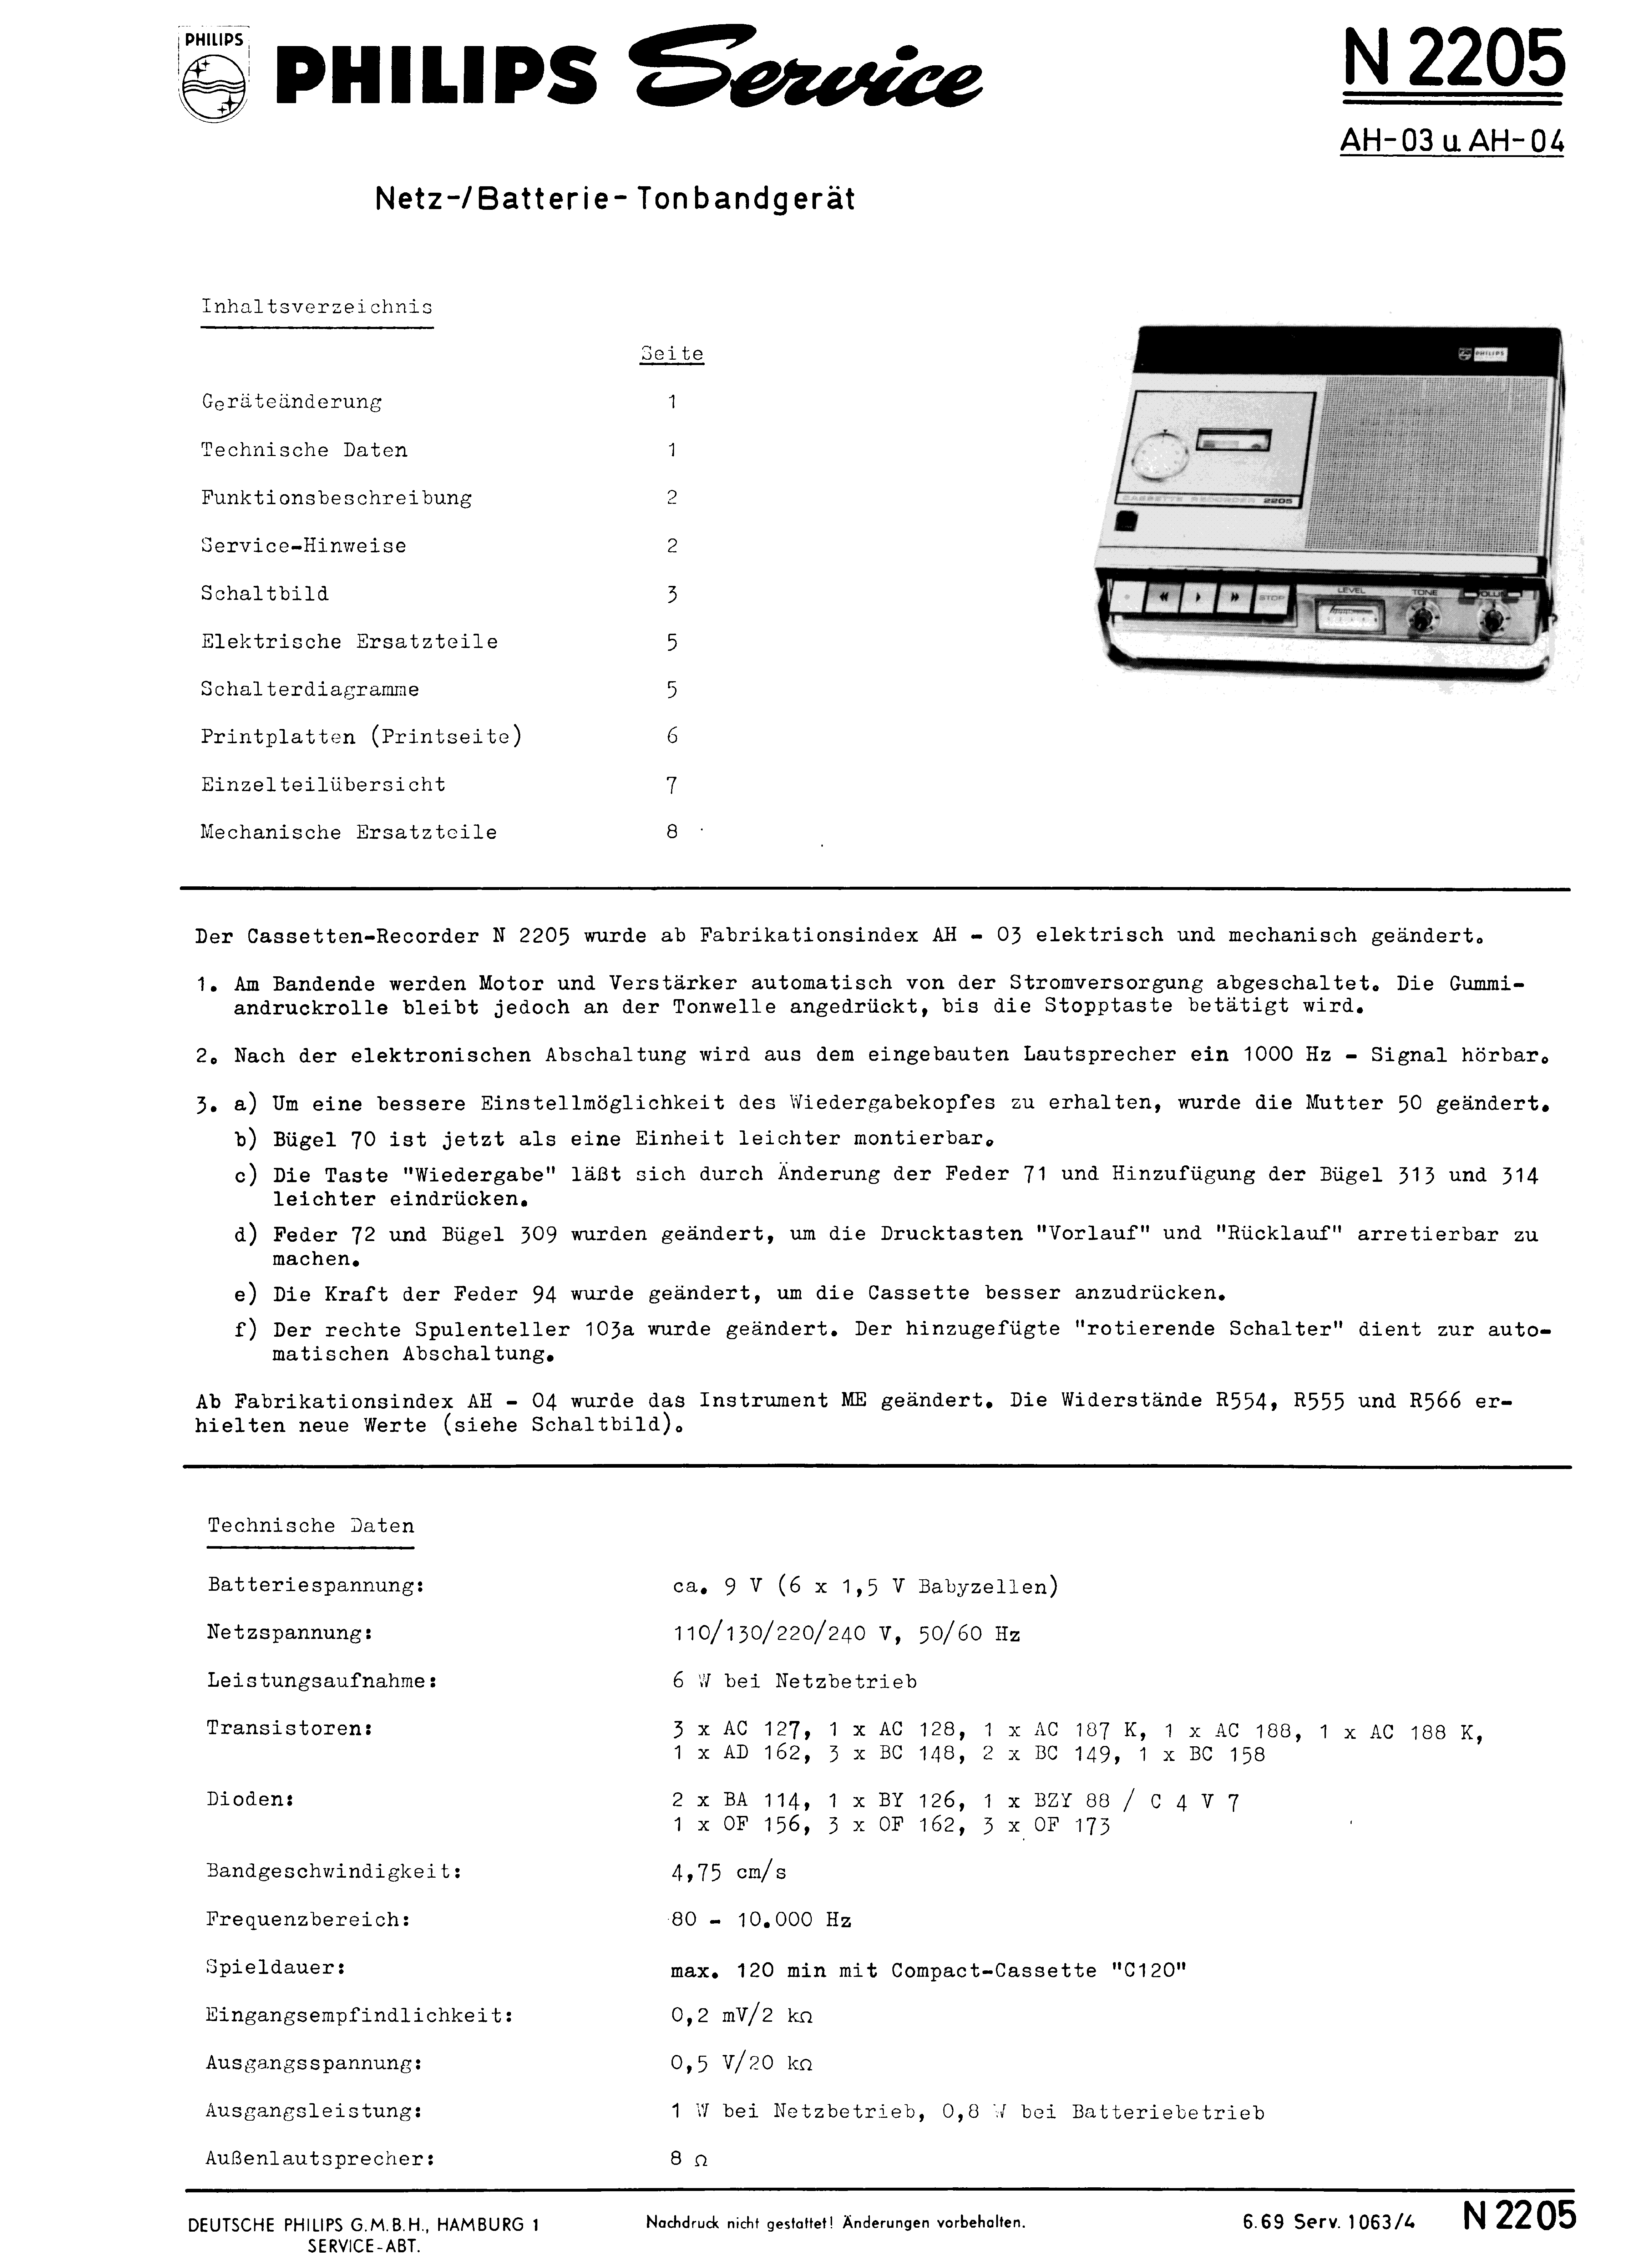 PHILIPS NETZ - BATTERIE - TONBANDGERAET N 2205 SM service manual (1st page)